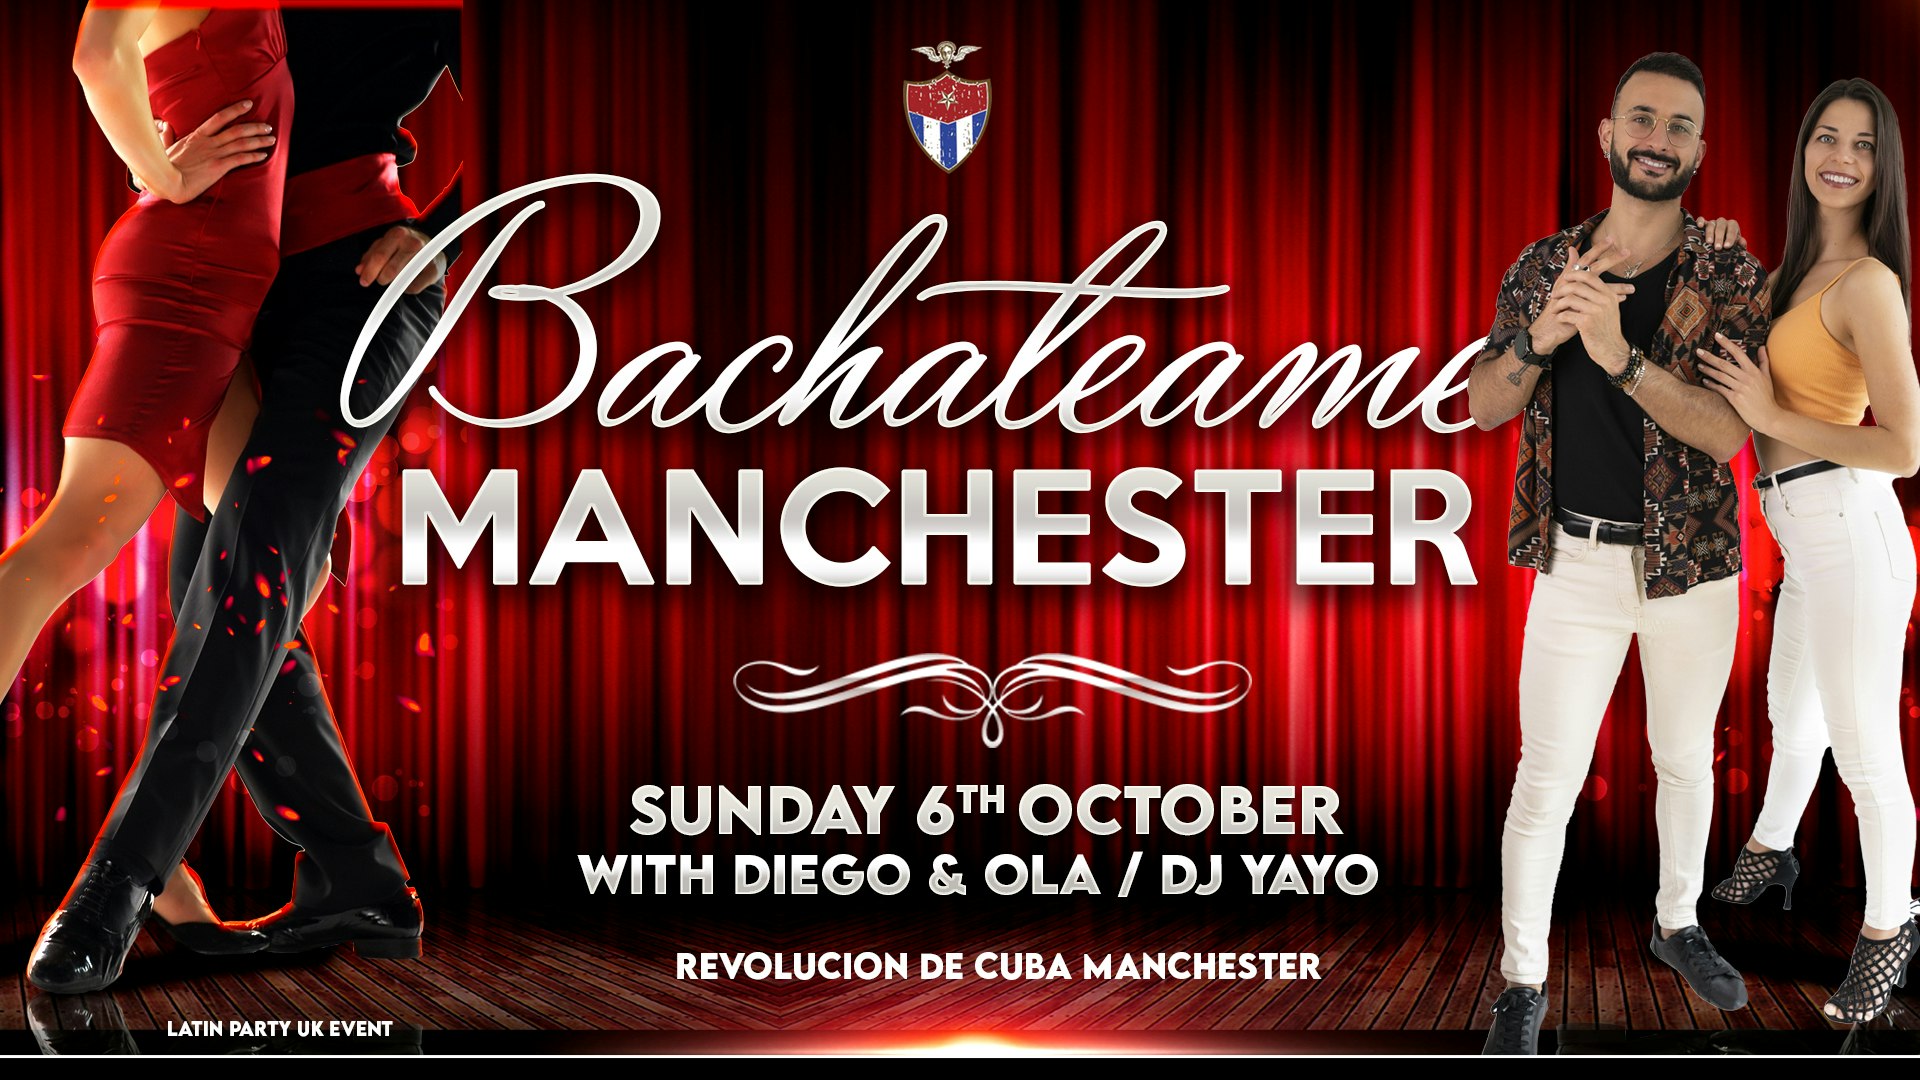 Bachateame Manchester – Sunday 6th October | Revolucion De Cuba